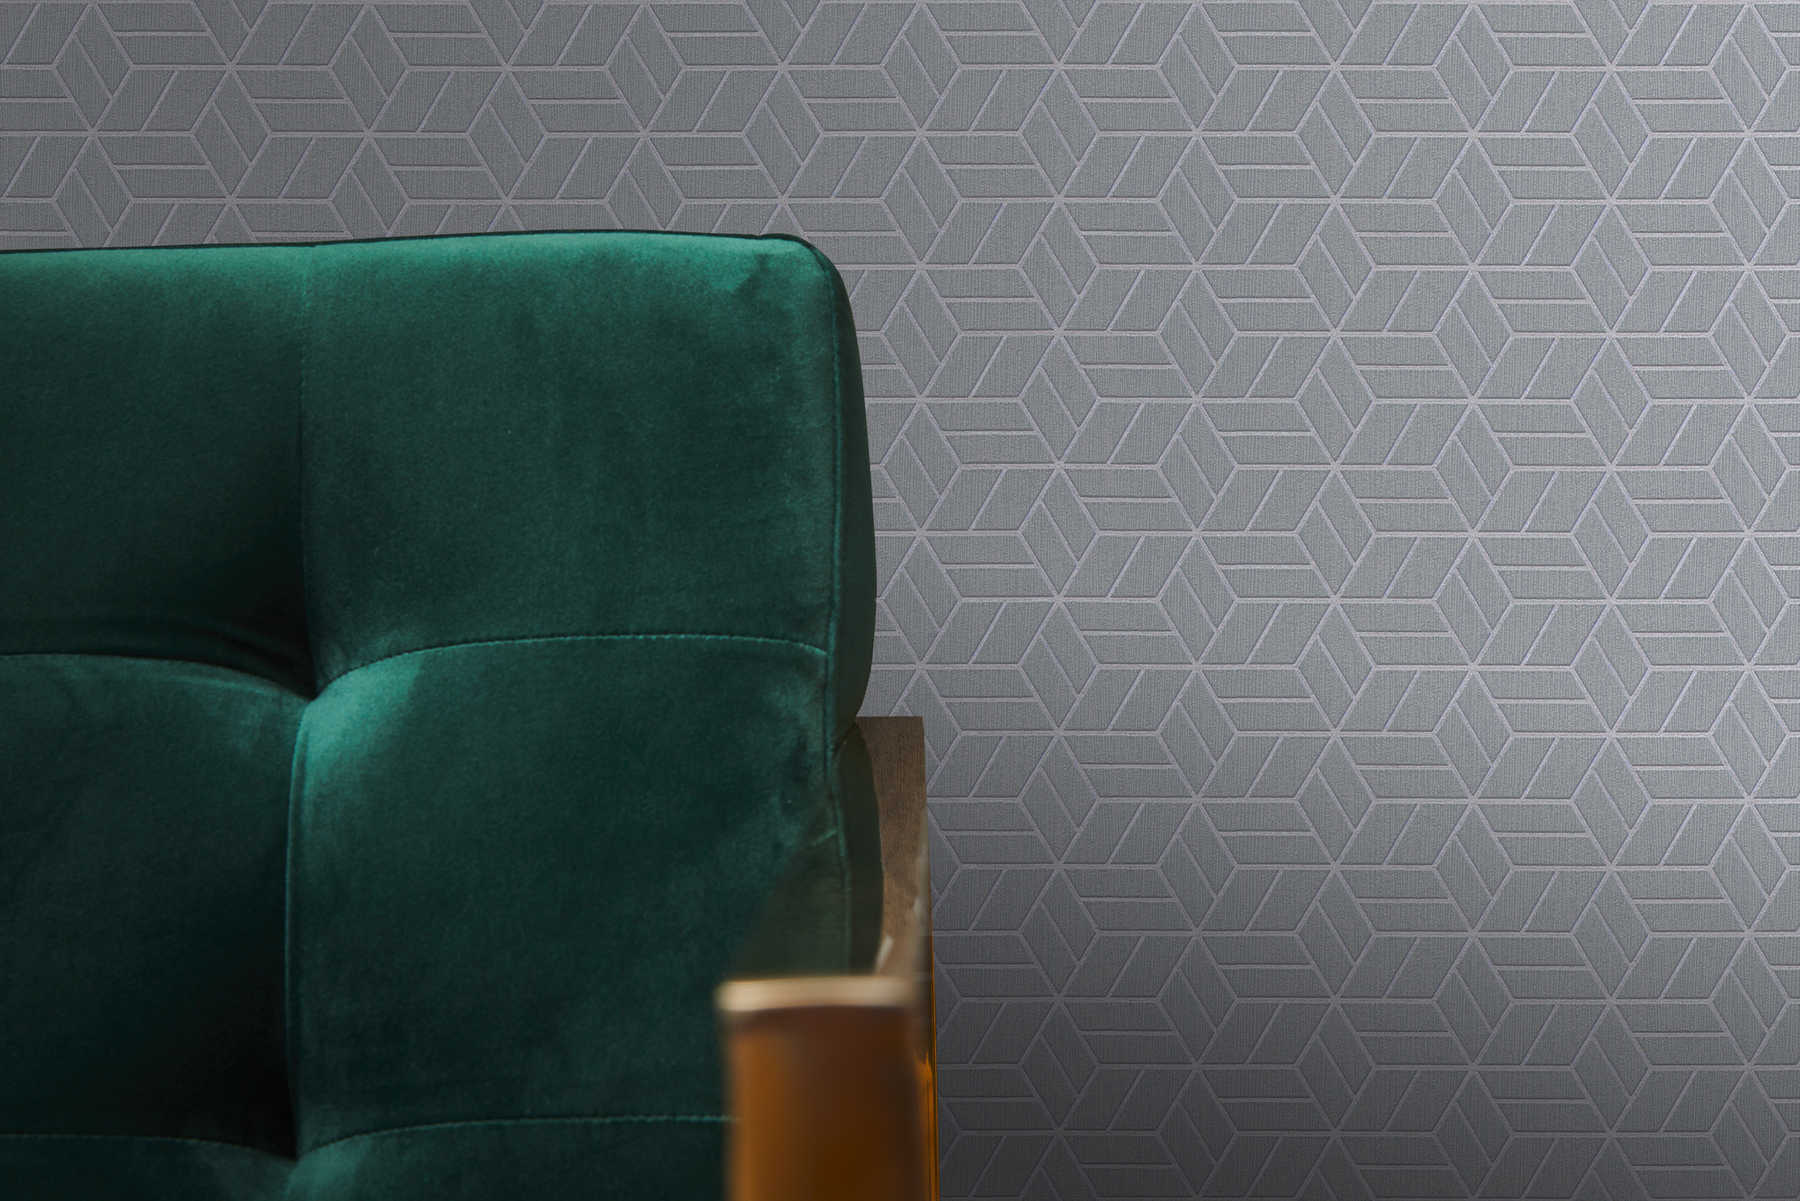             Wallpaper geometric pattern & glitter effect - grey, silver
        